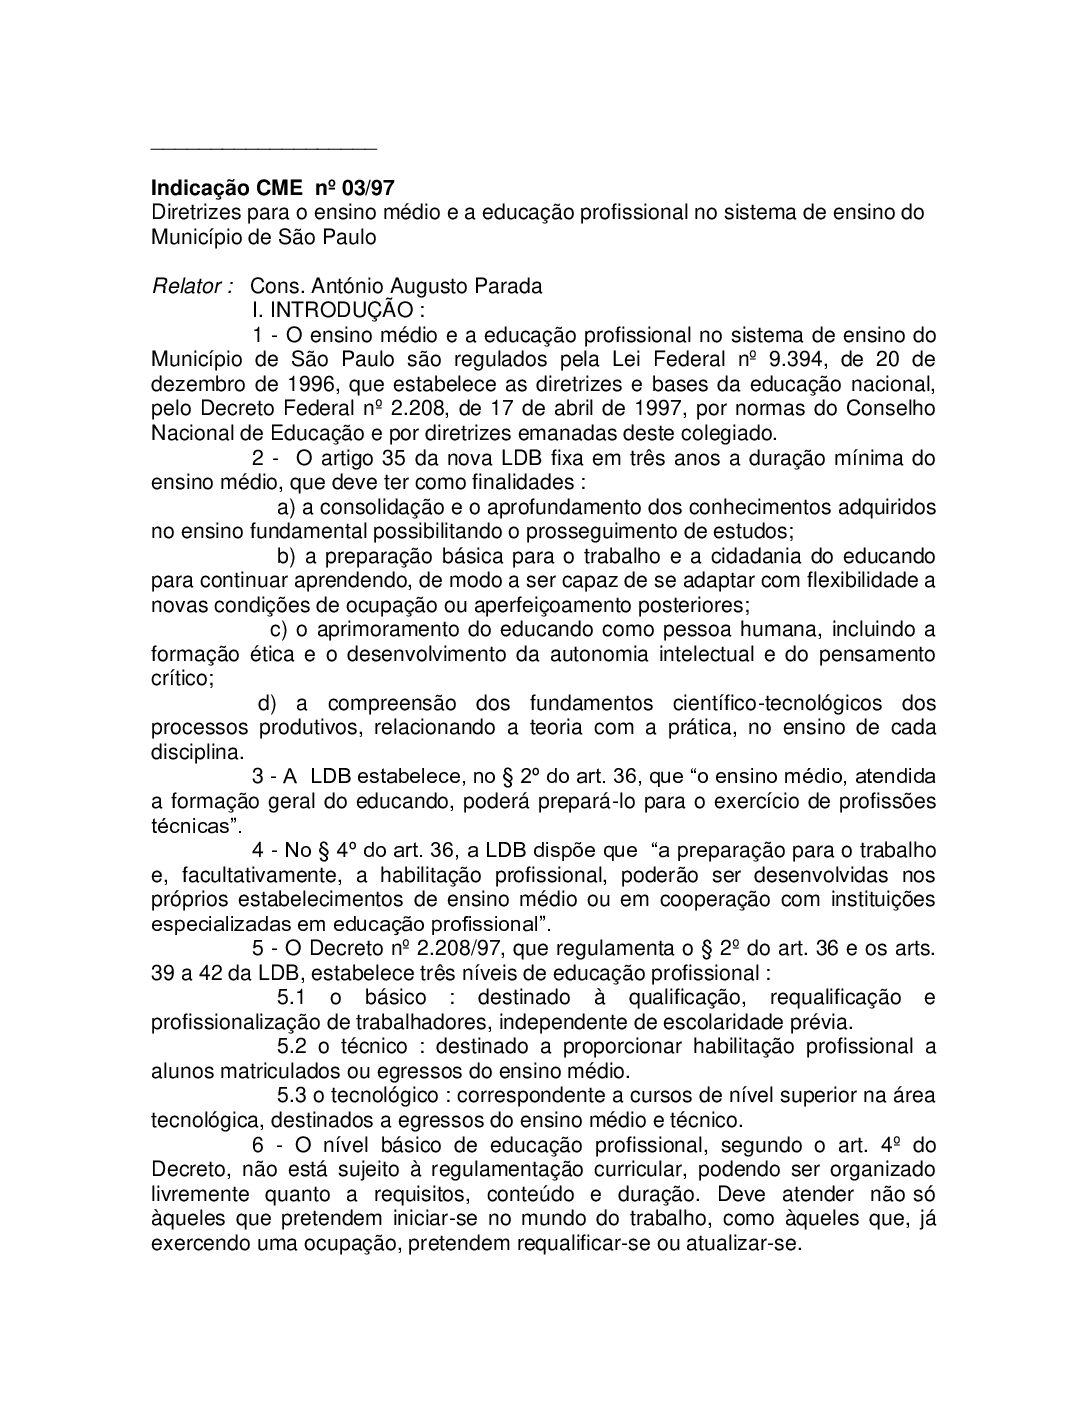 Indicação CME nº 03/1997 - Diretrizes para o Ensino Médio e a Educação Profissional no Sistema de Ensino do Município de São Paulo